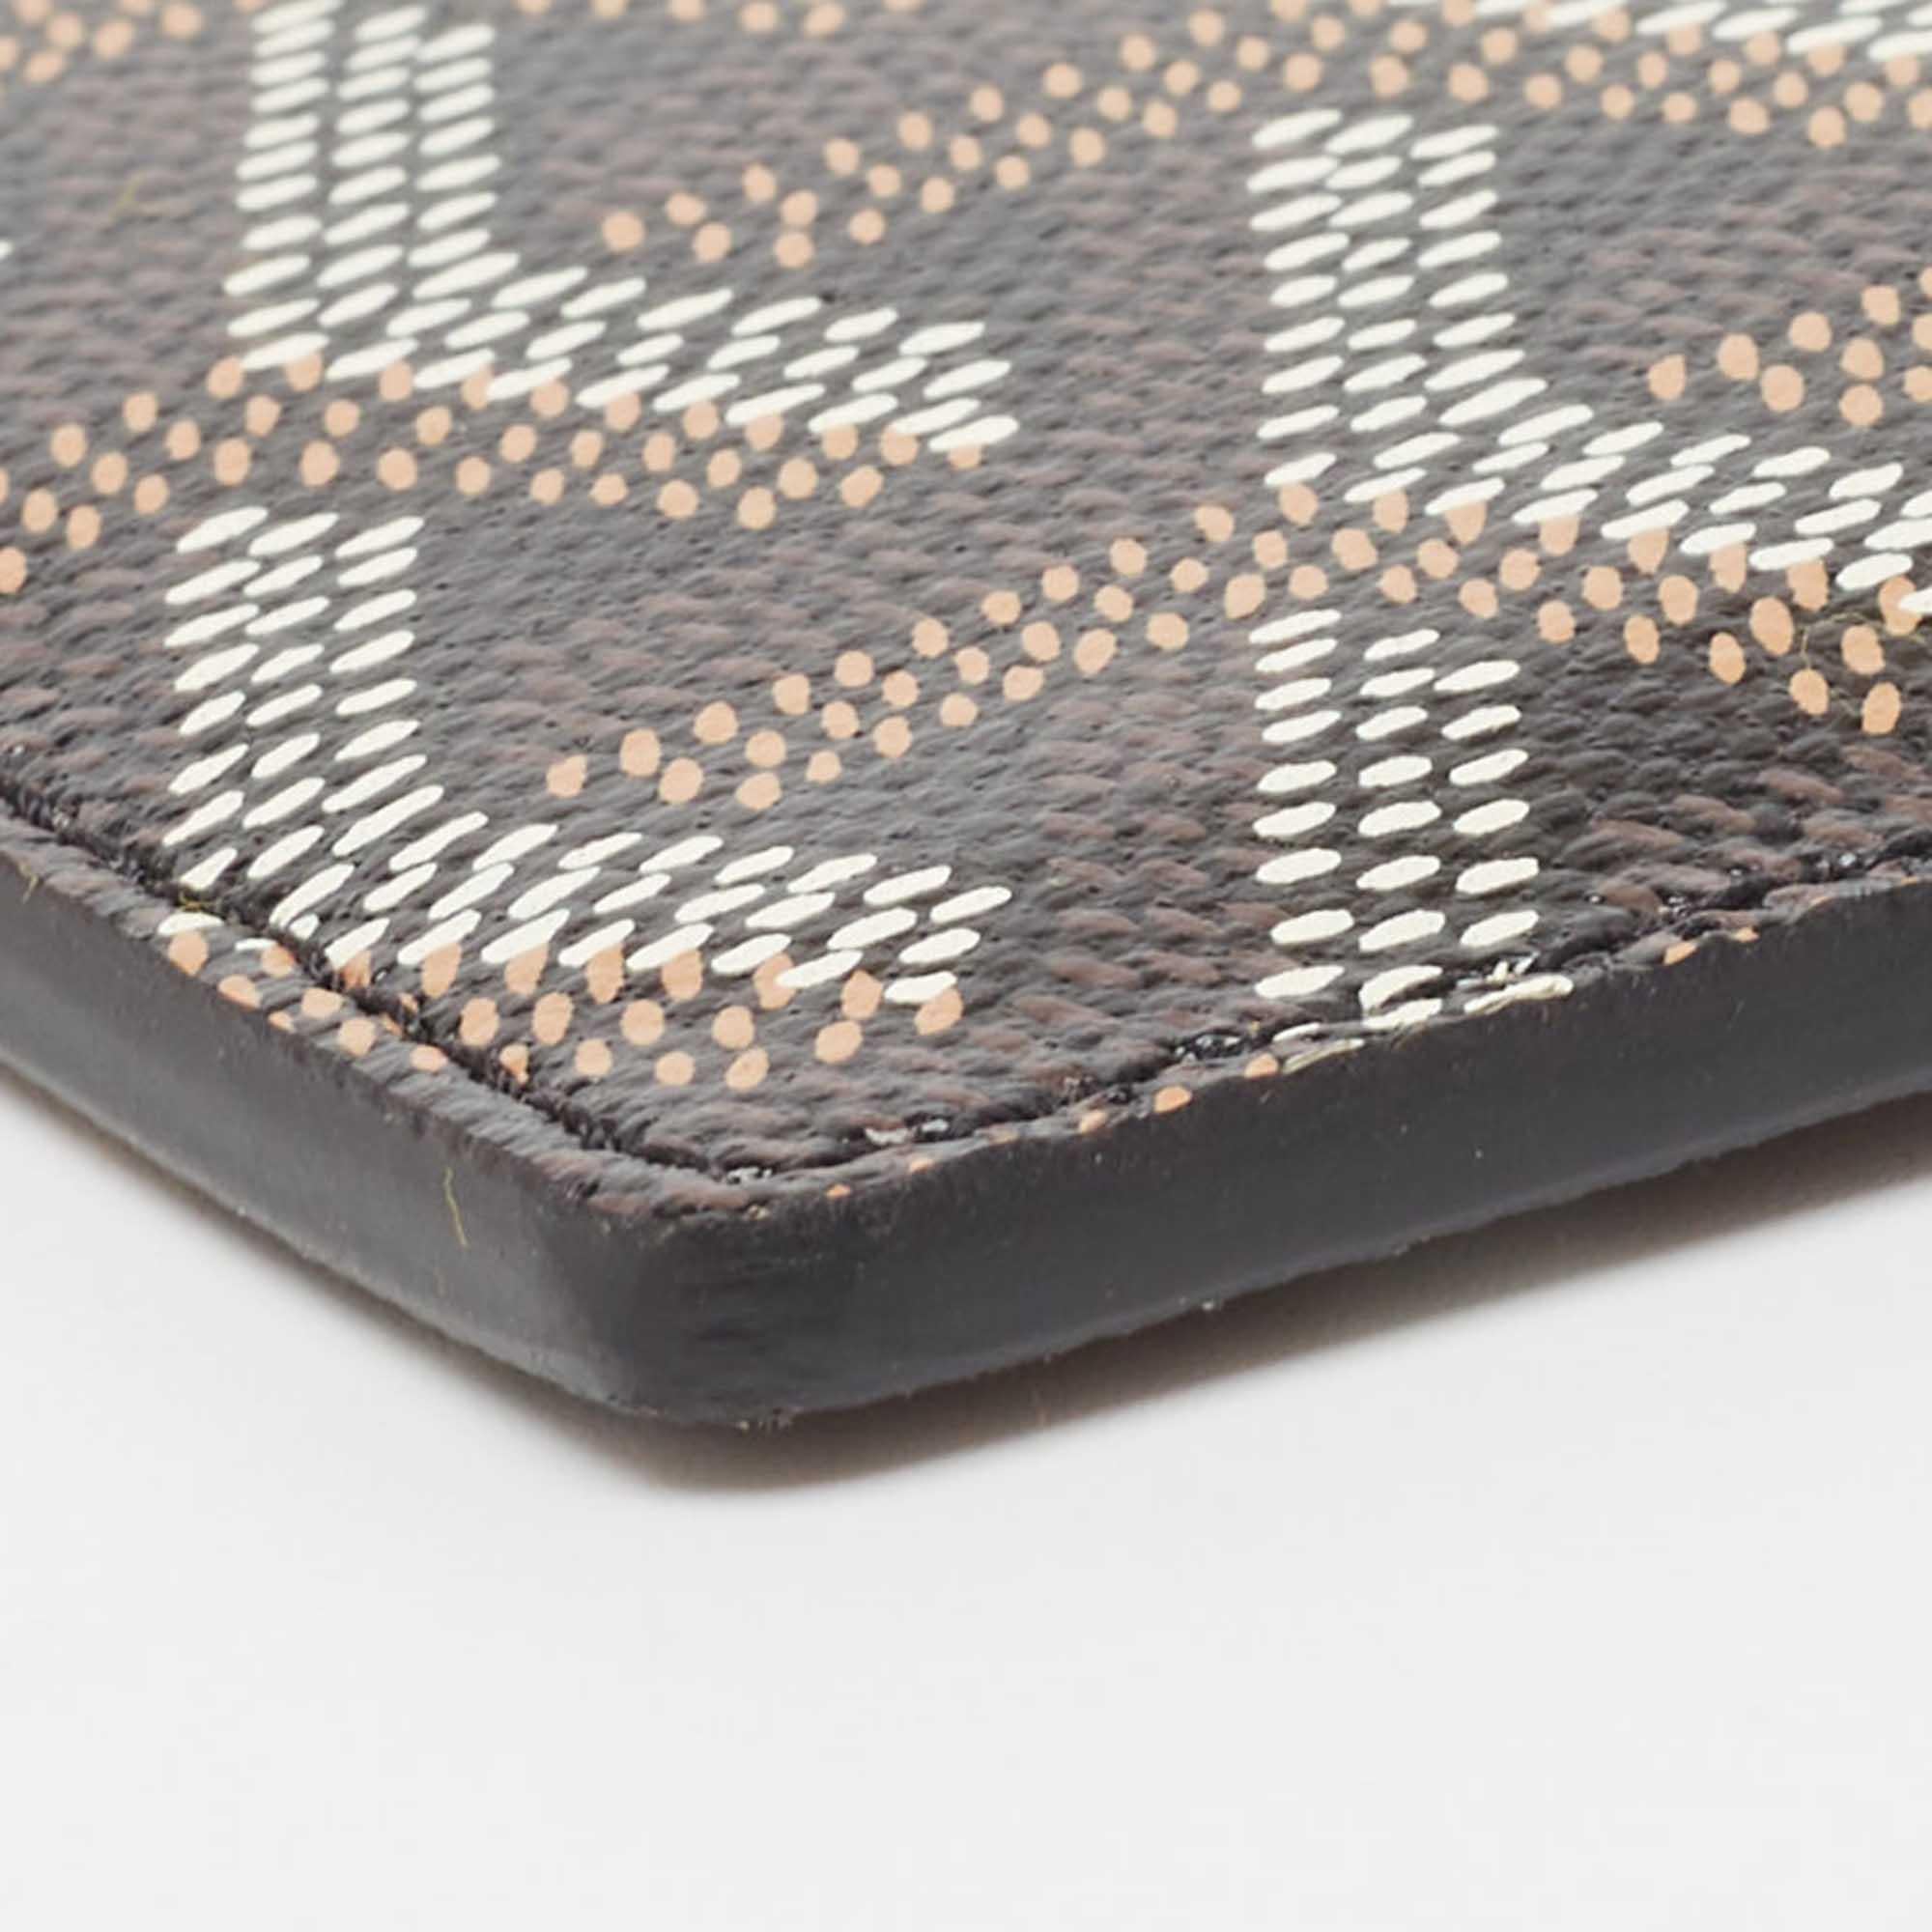 Ce porte-cartes Saint Sulpice de Goyard apporte une touche de luxe et un style immense. Il est réalisé en toile Goyardine noire et s'ouvre sur un intérieur en cuir qui abrite des poches à glissière et plusieurs fentes pour cartes.

Comprend
Boîte